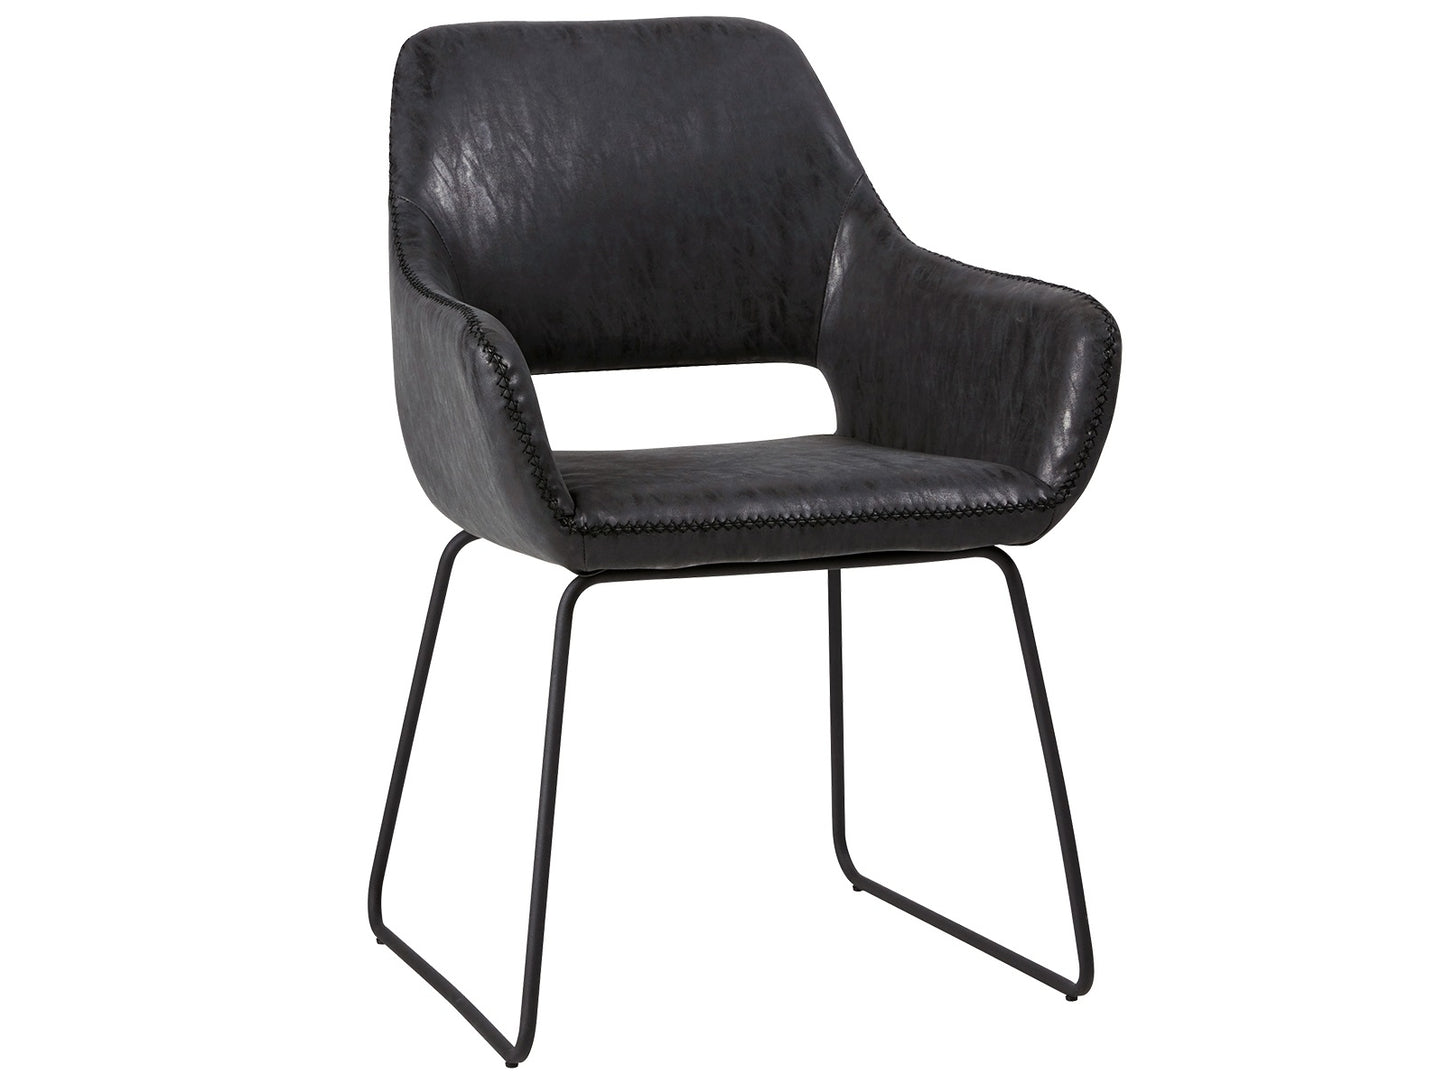 2 stk. Angel Spisebordsstole, sort kunstlæder, sort metal ben.